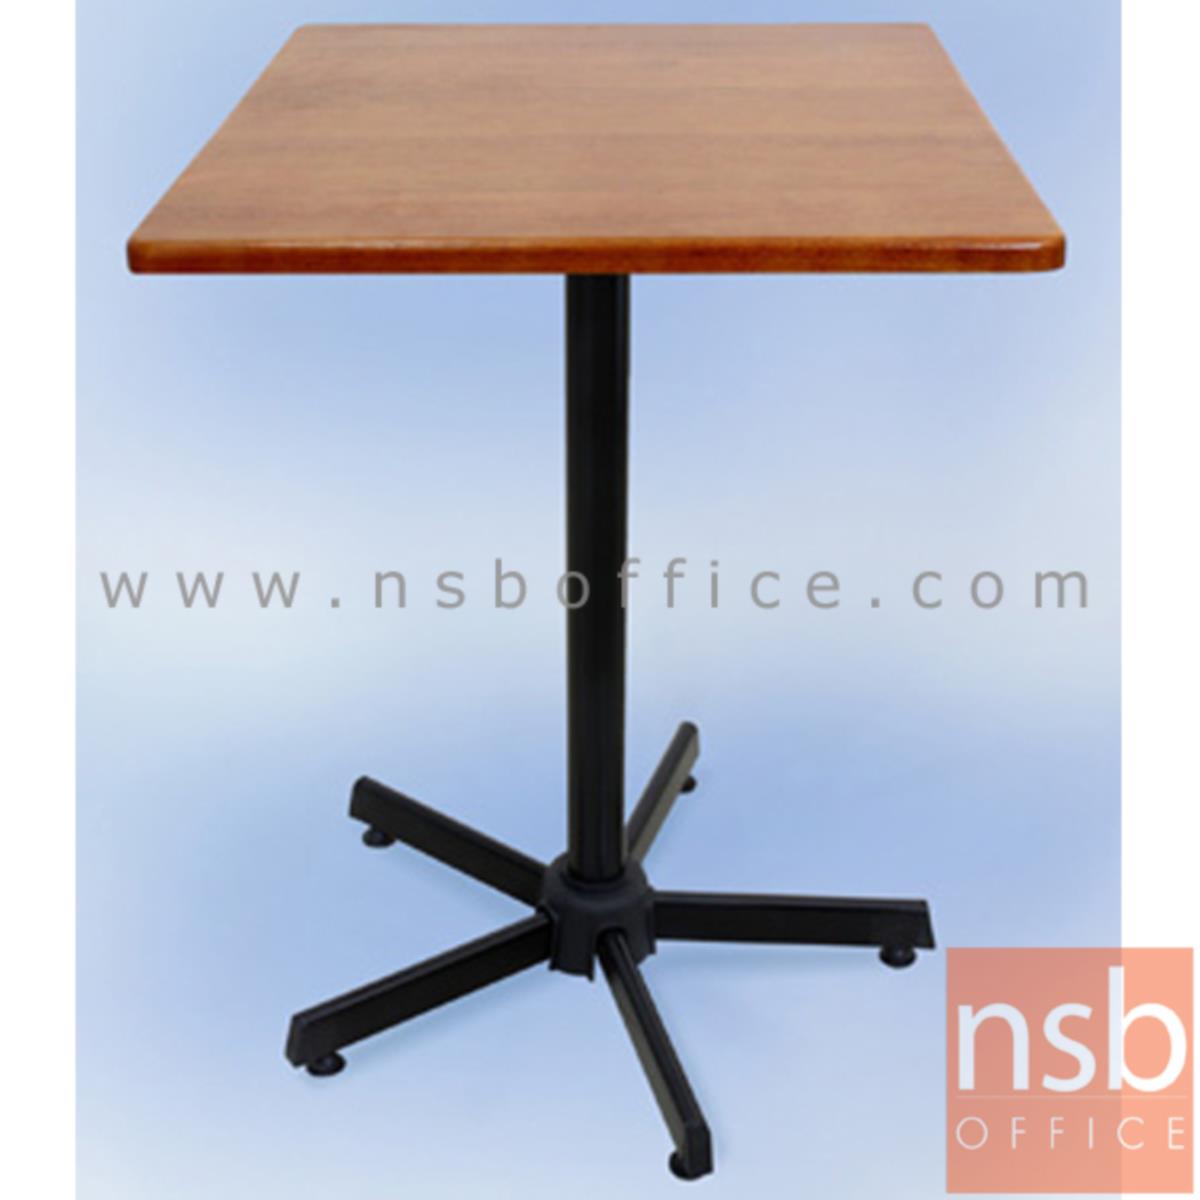 โต๊ะไม้ยางพารา รุ่น Fyn (ฟิน) ขนาด 60W ,75W cm. ขาเหล็ก 